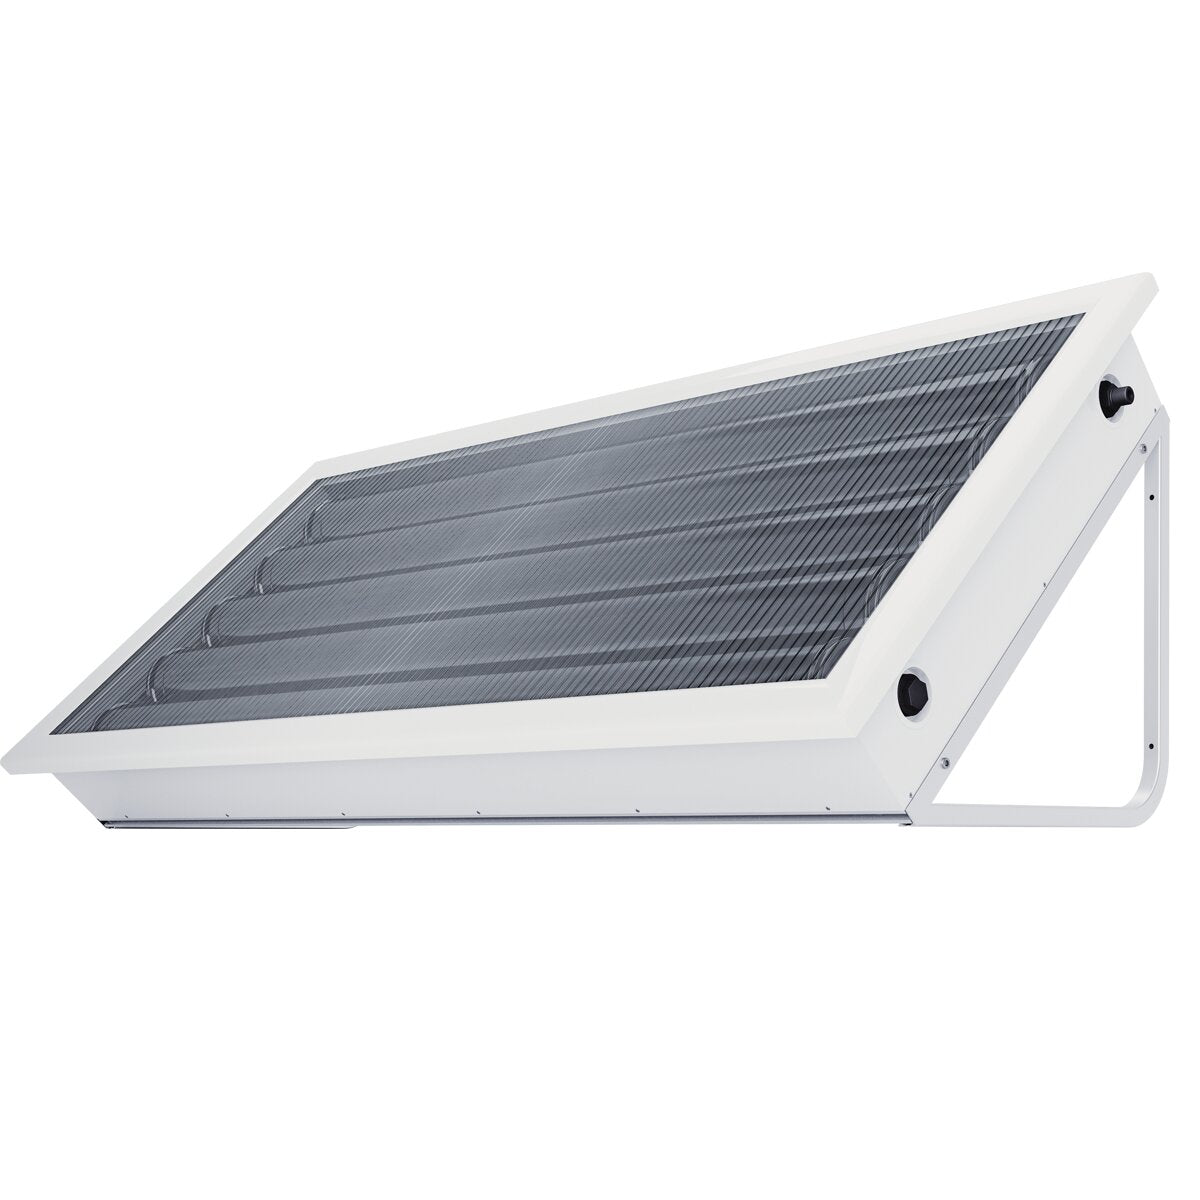 Pleion Ego 110 weißes Solarpanel mit natürlicher Zirkulation, 105 Liter, flaches und geneigtes Dach